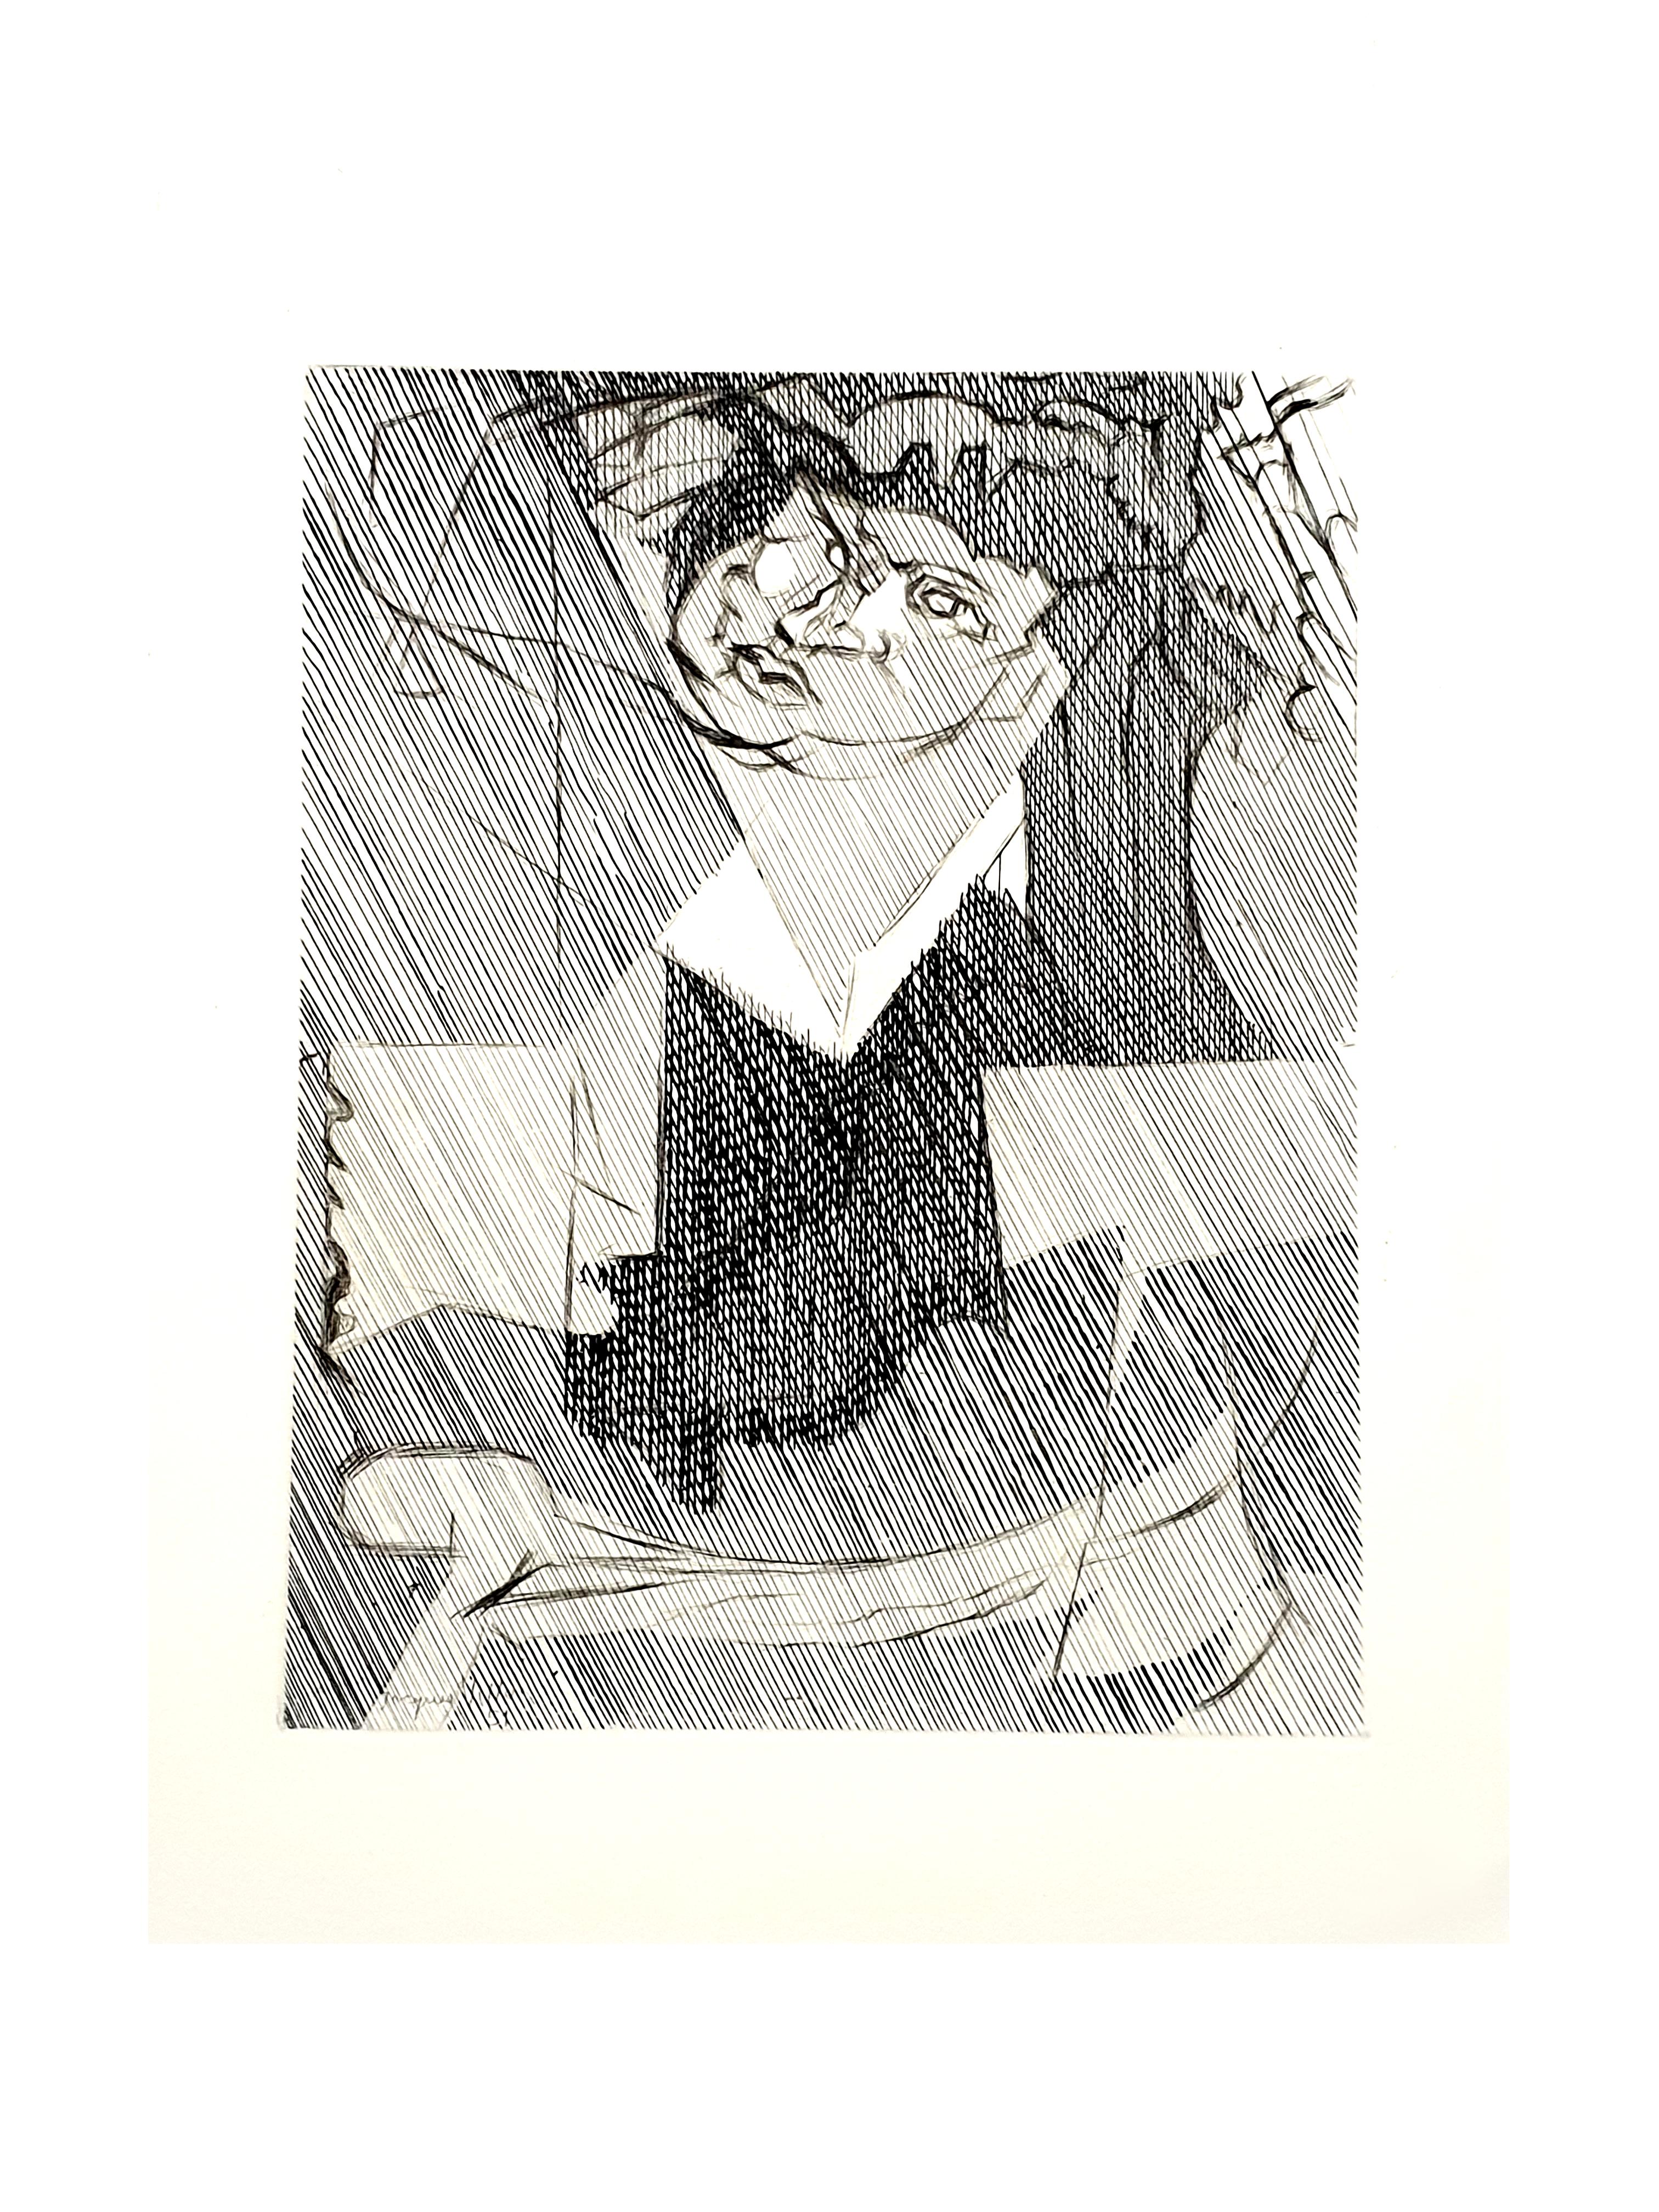 Jacques Villon - Cubist Man - Original Etching